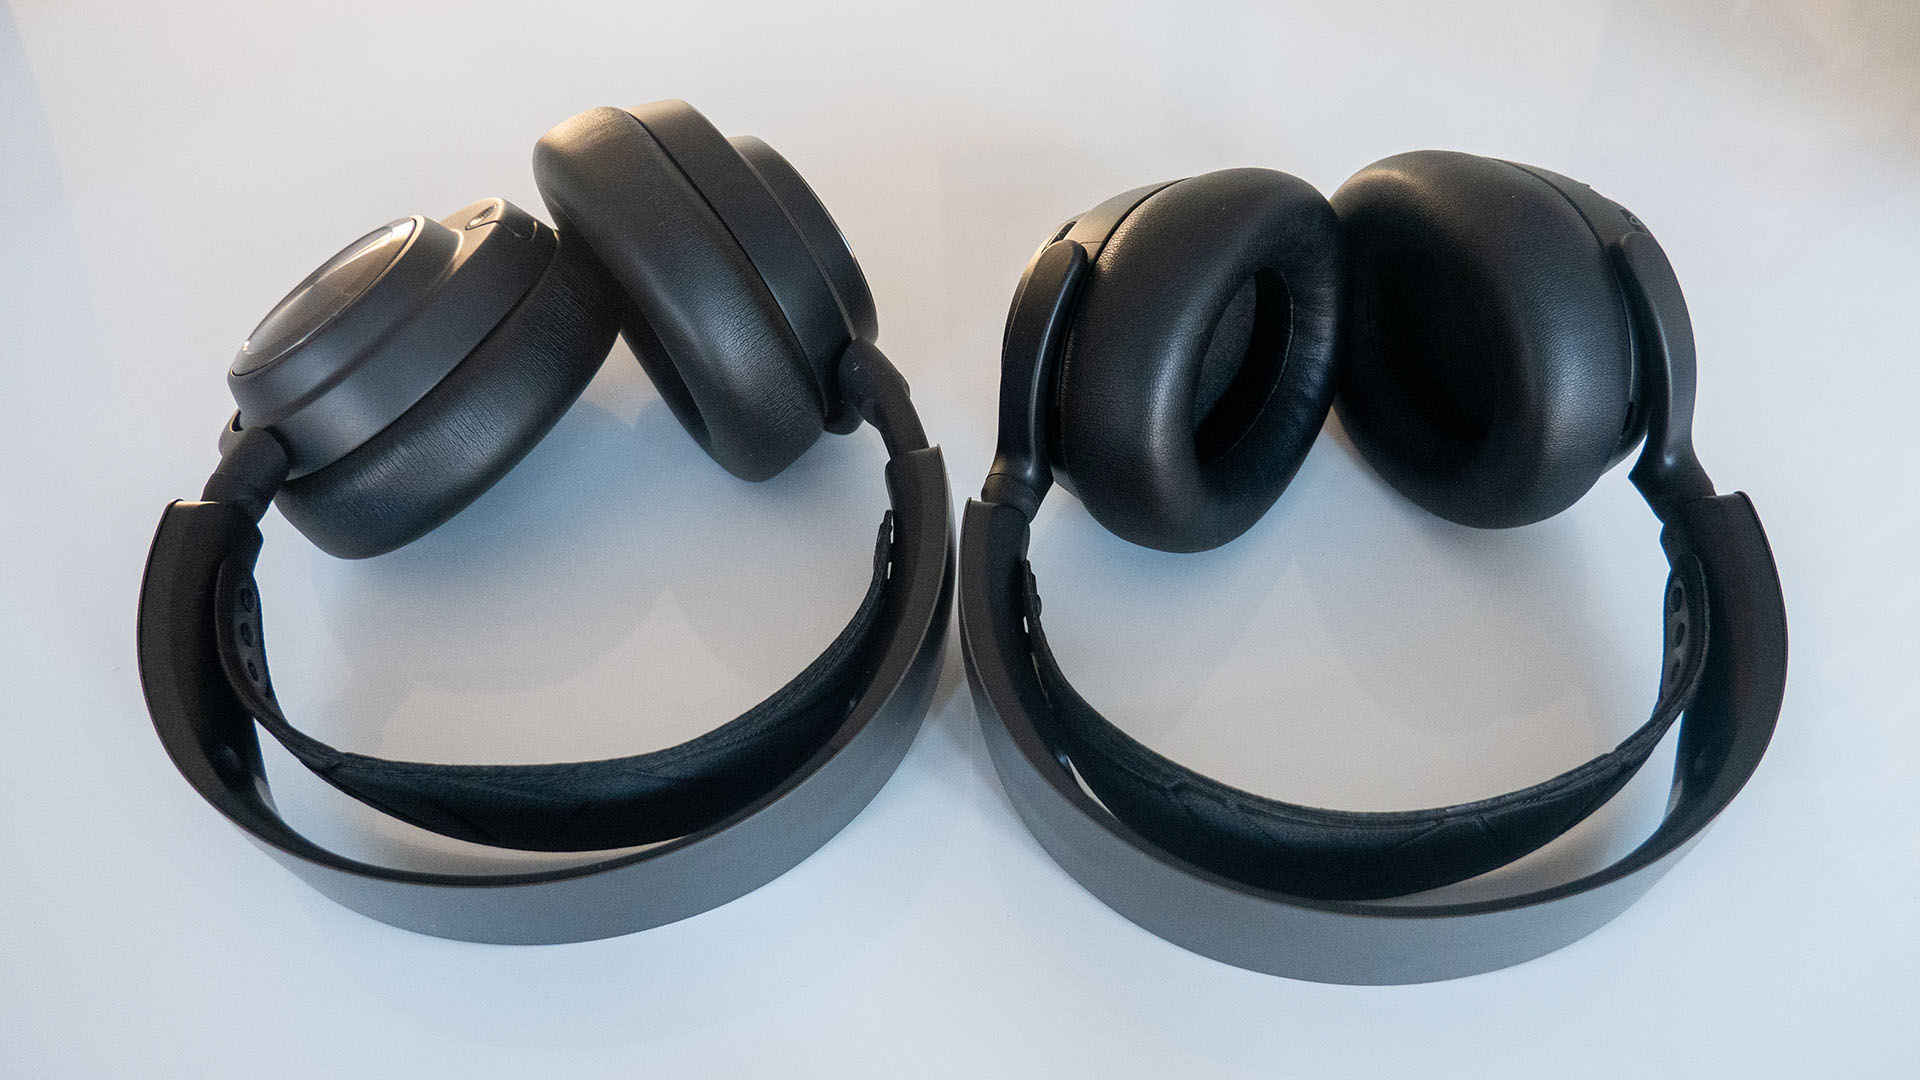 Image of Steelseries Artics Nova Pro headset on table